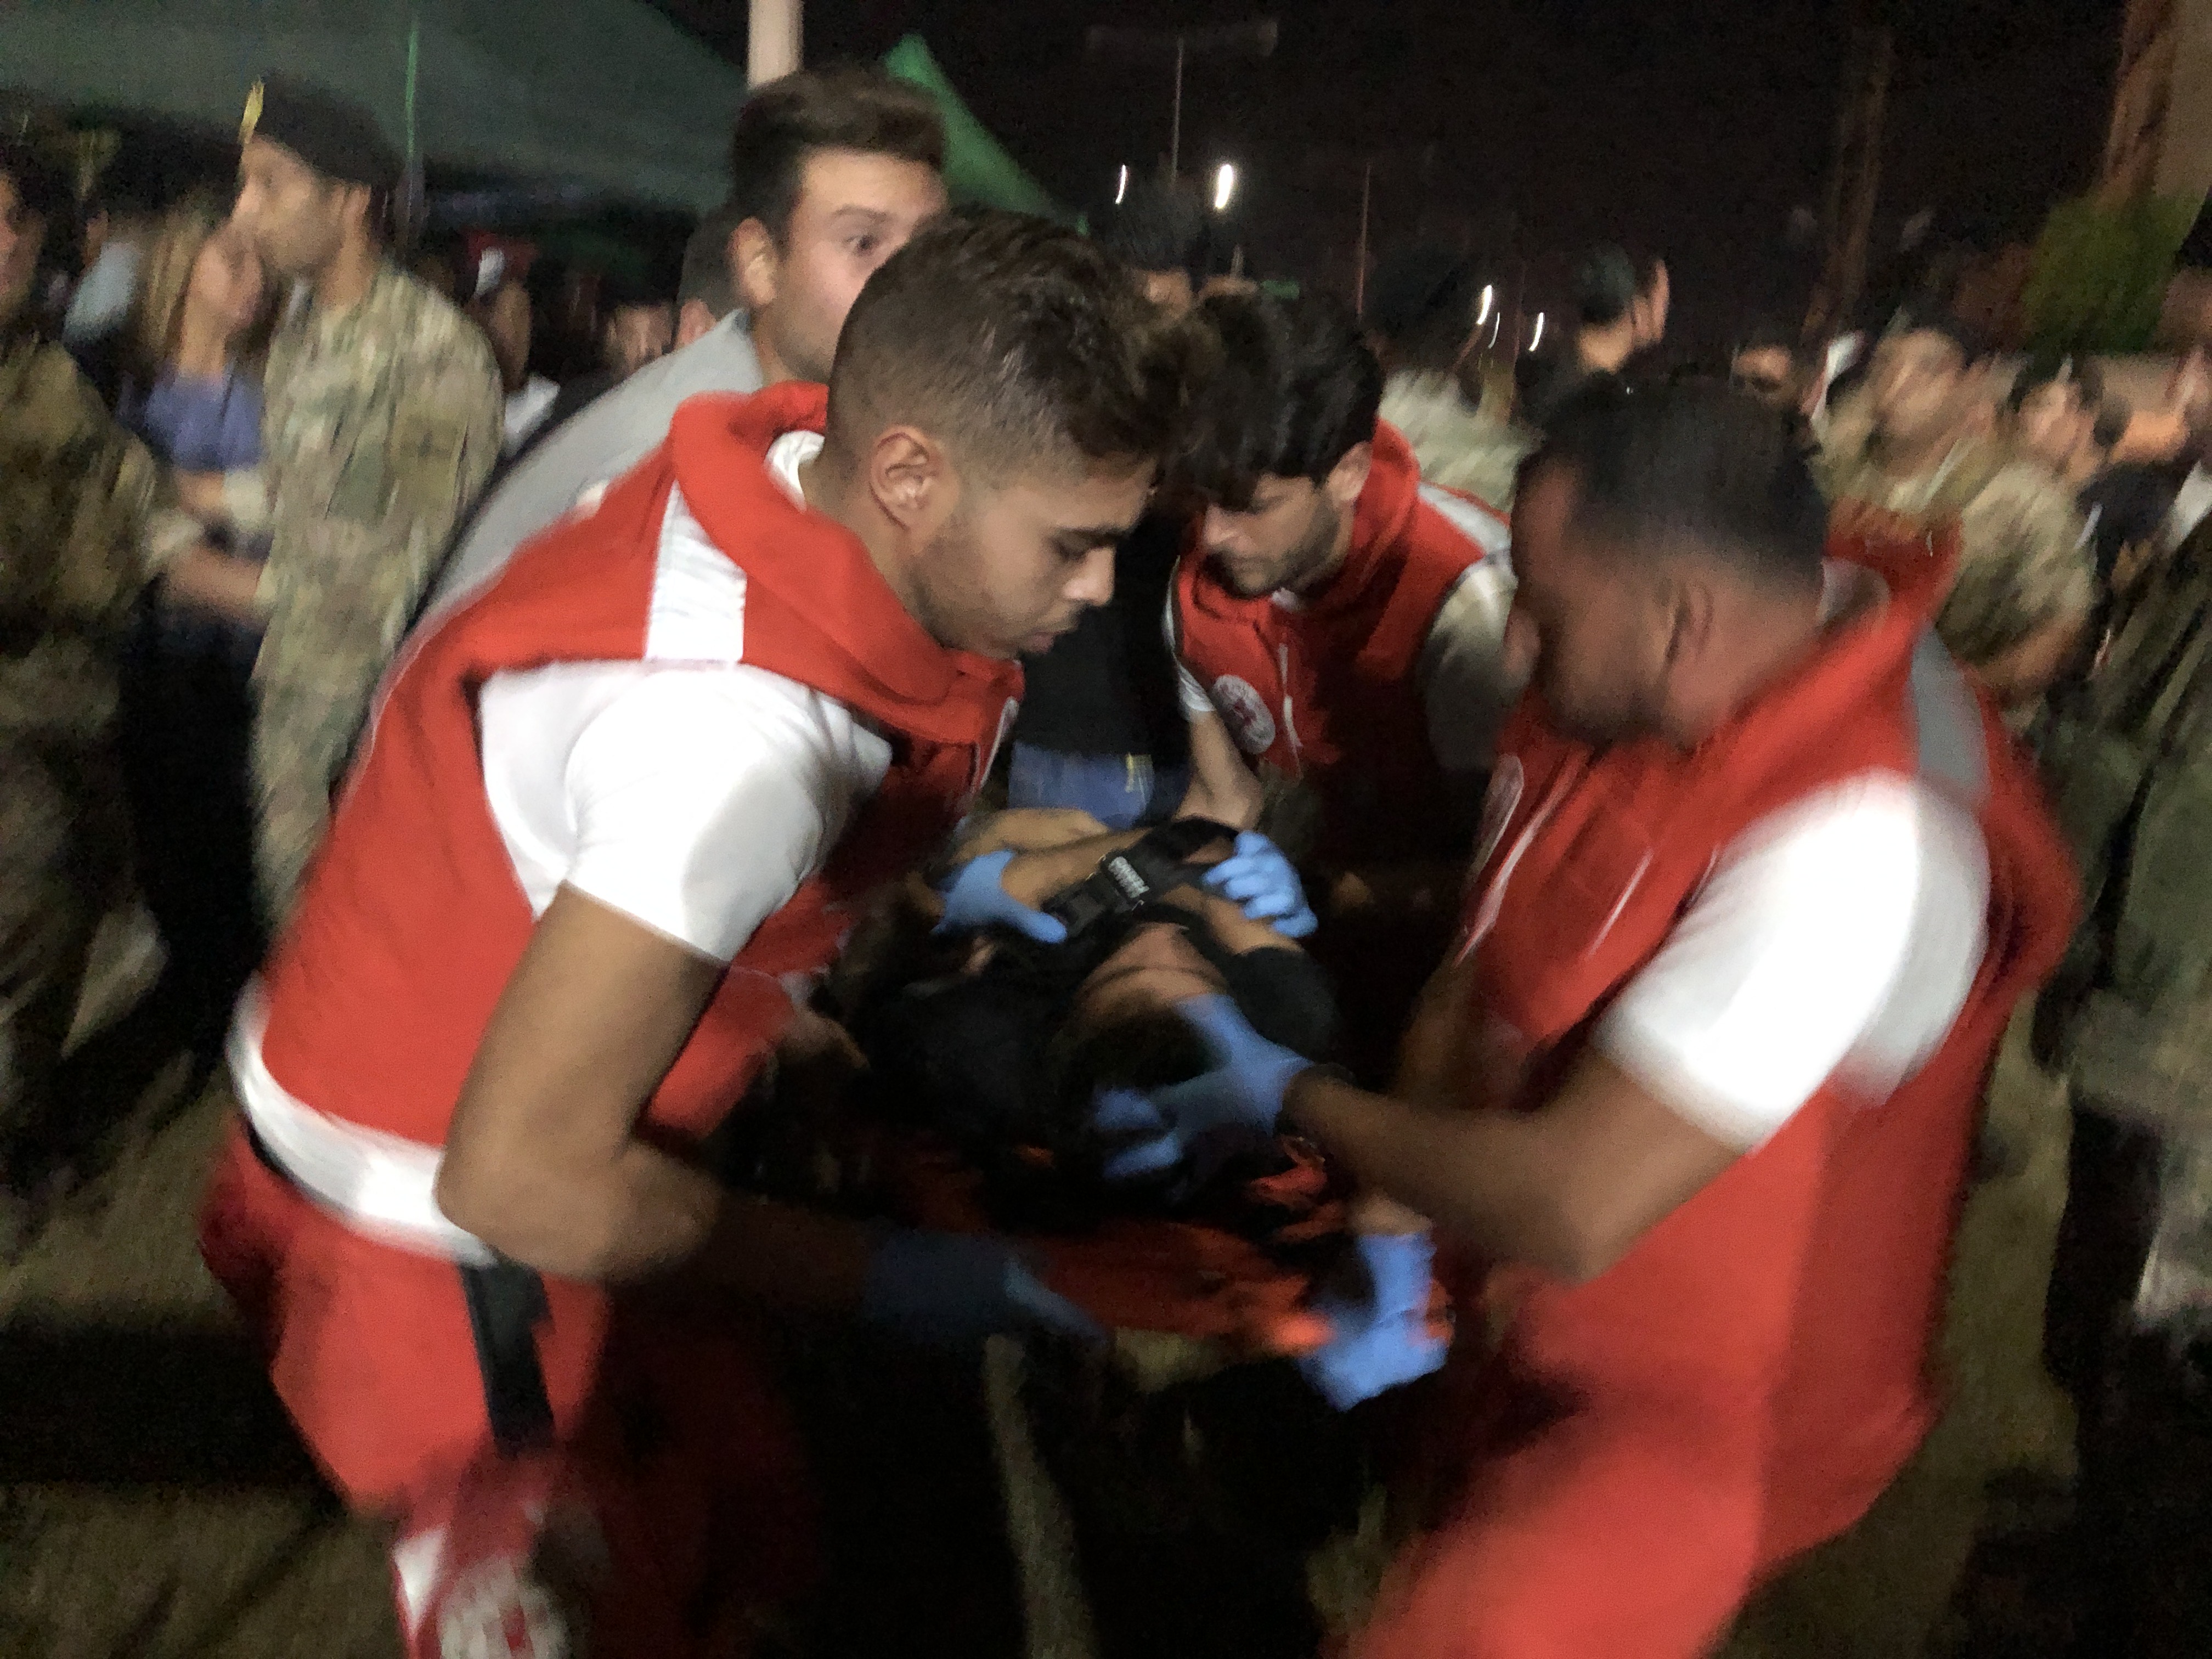 الصليب الاحمر نقل معتصماً أغمي عليه بعد إصابته بوعكة صحية عندما كان يهتف بين المحتجين في صور 